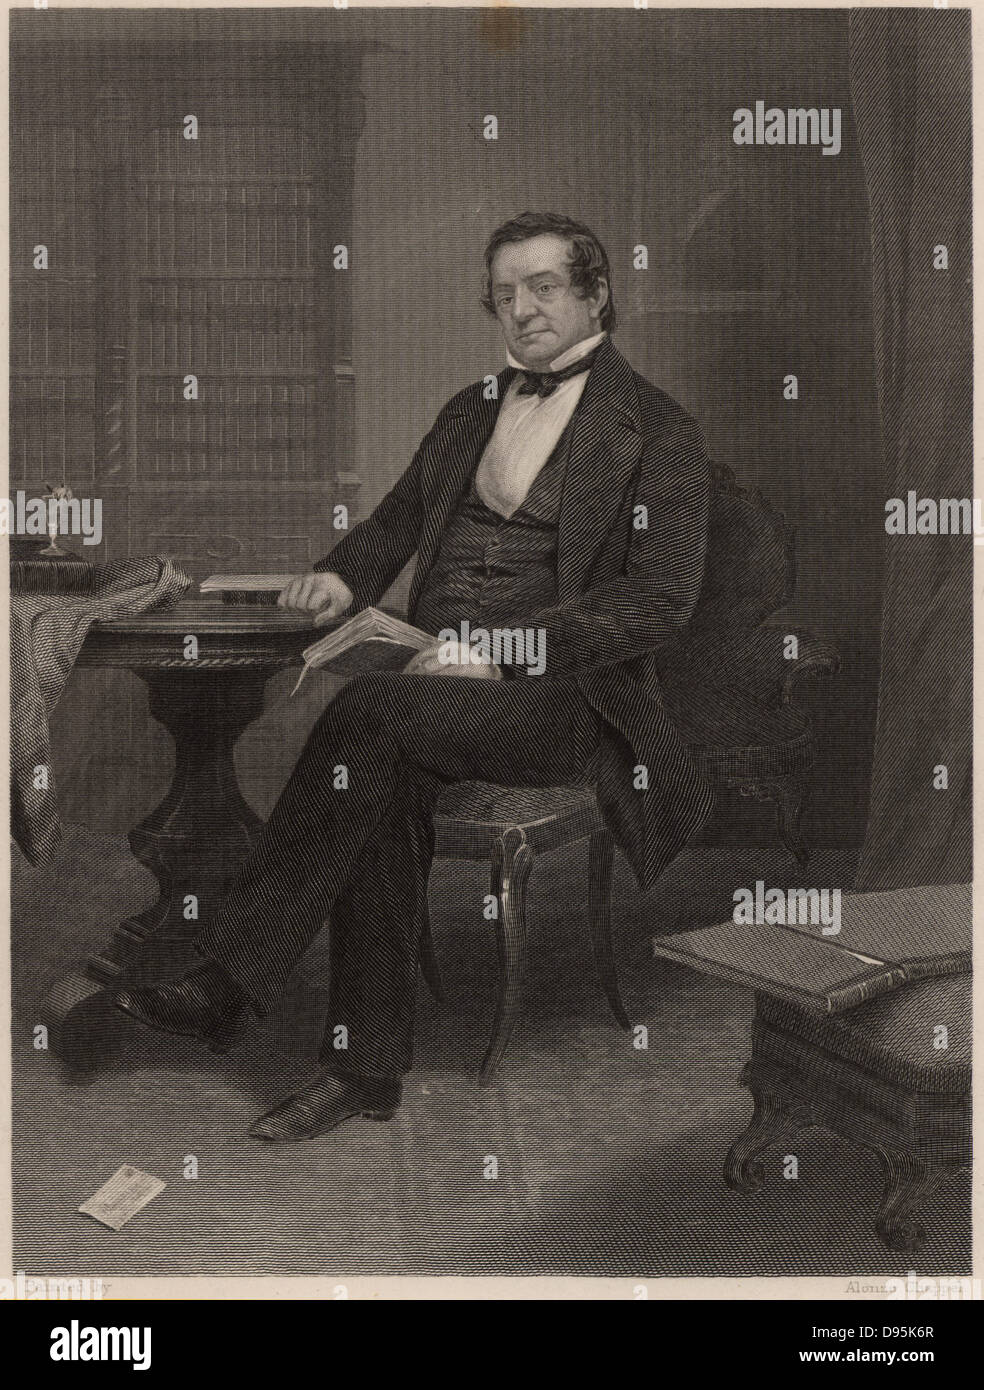 Washington Irving (1783-1859), l'autore americano e diplomatico, nato a Manhattan. Egli è ricordato per i suoi racconti brevi come "La Leggenda di Sleepy Hollow' e 'Rip van Winkle'. Incisione. Foto Stock